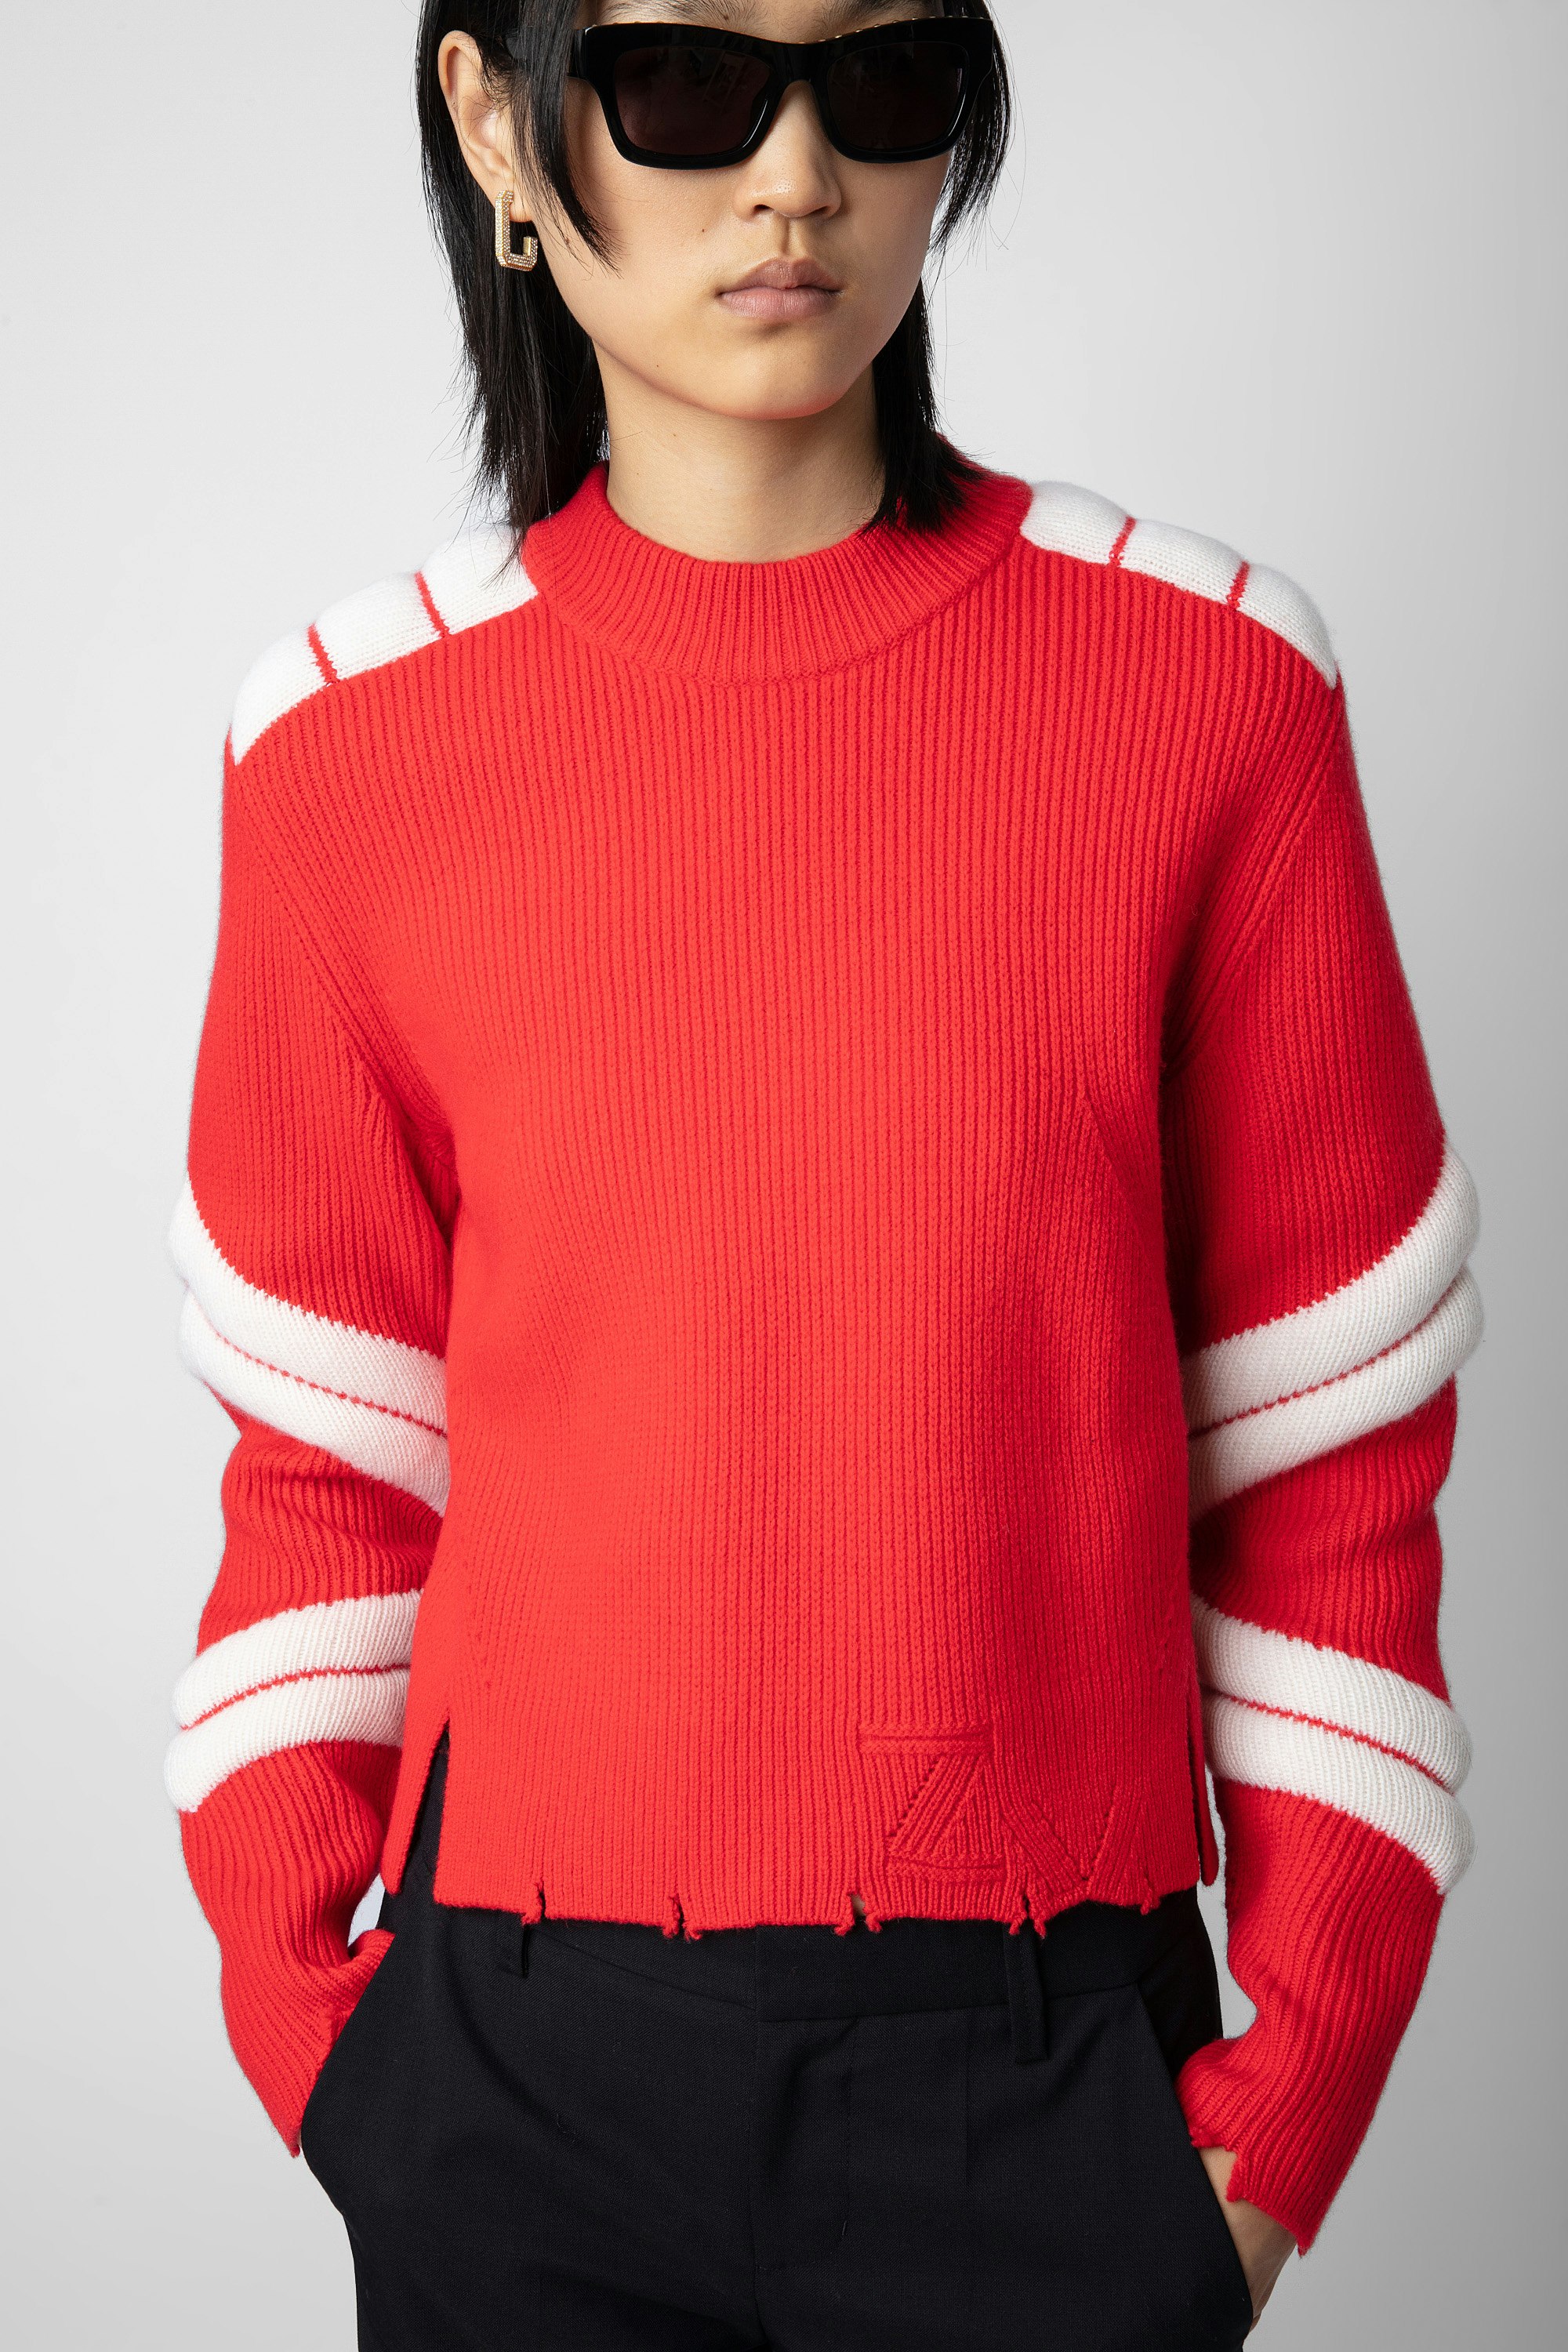 Maglione Georgia - Maglione in lana merino rosso con motivi a contrasto in rilievo e bordi effetto consumato da donna.